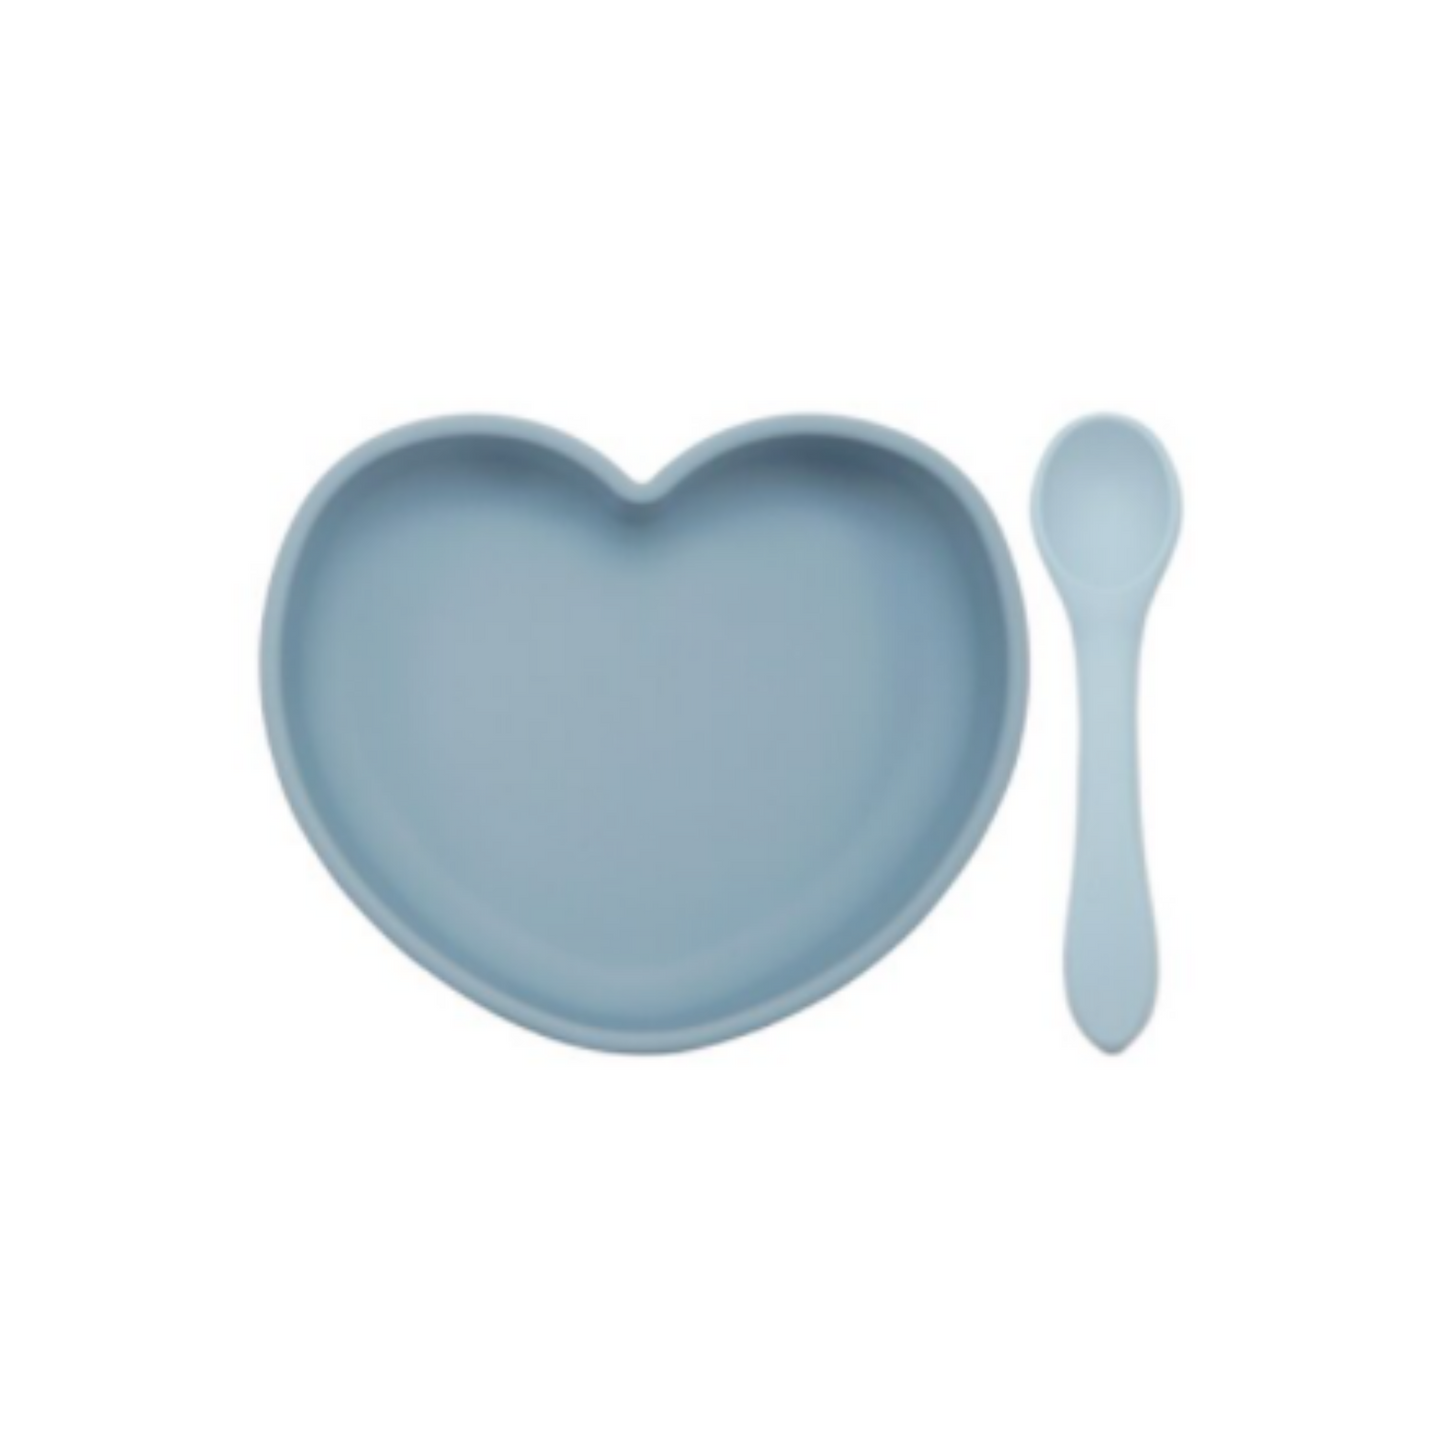 Heart-Shaped Dinner Plate